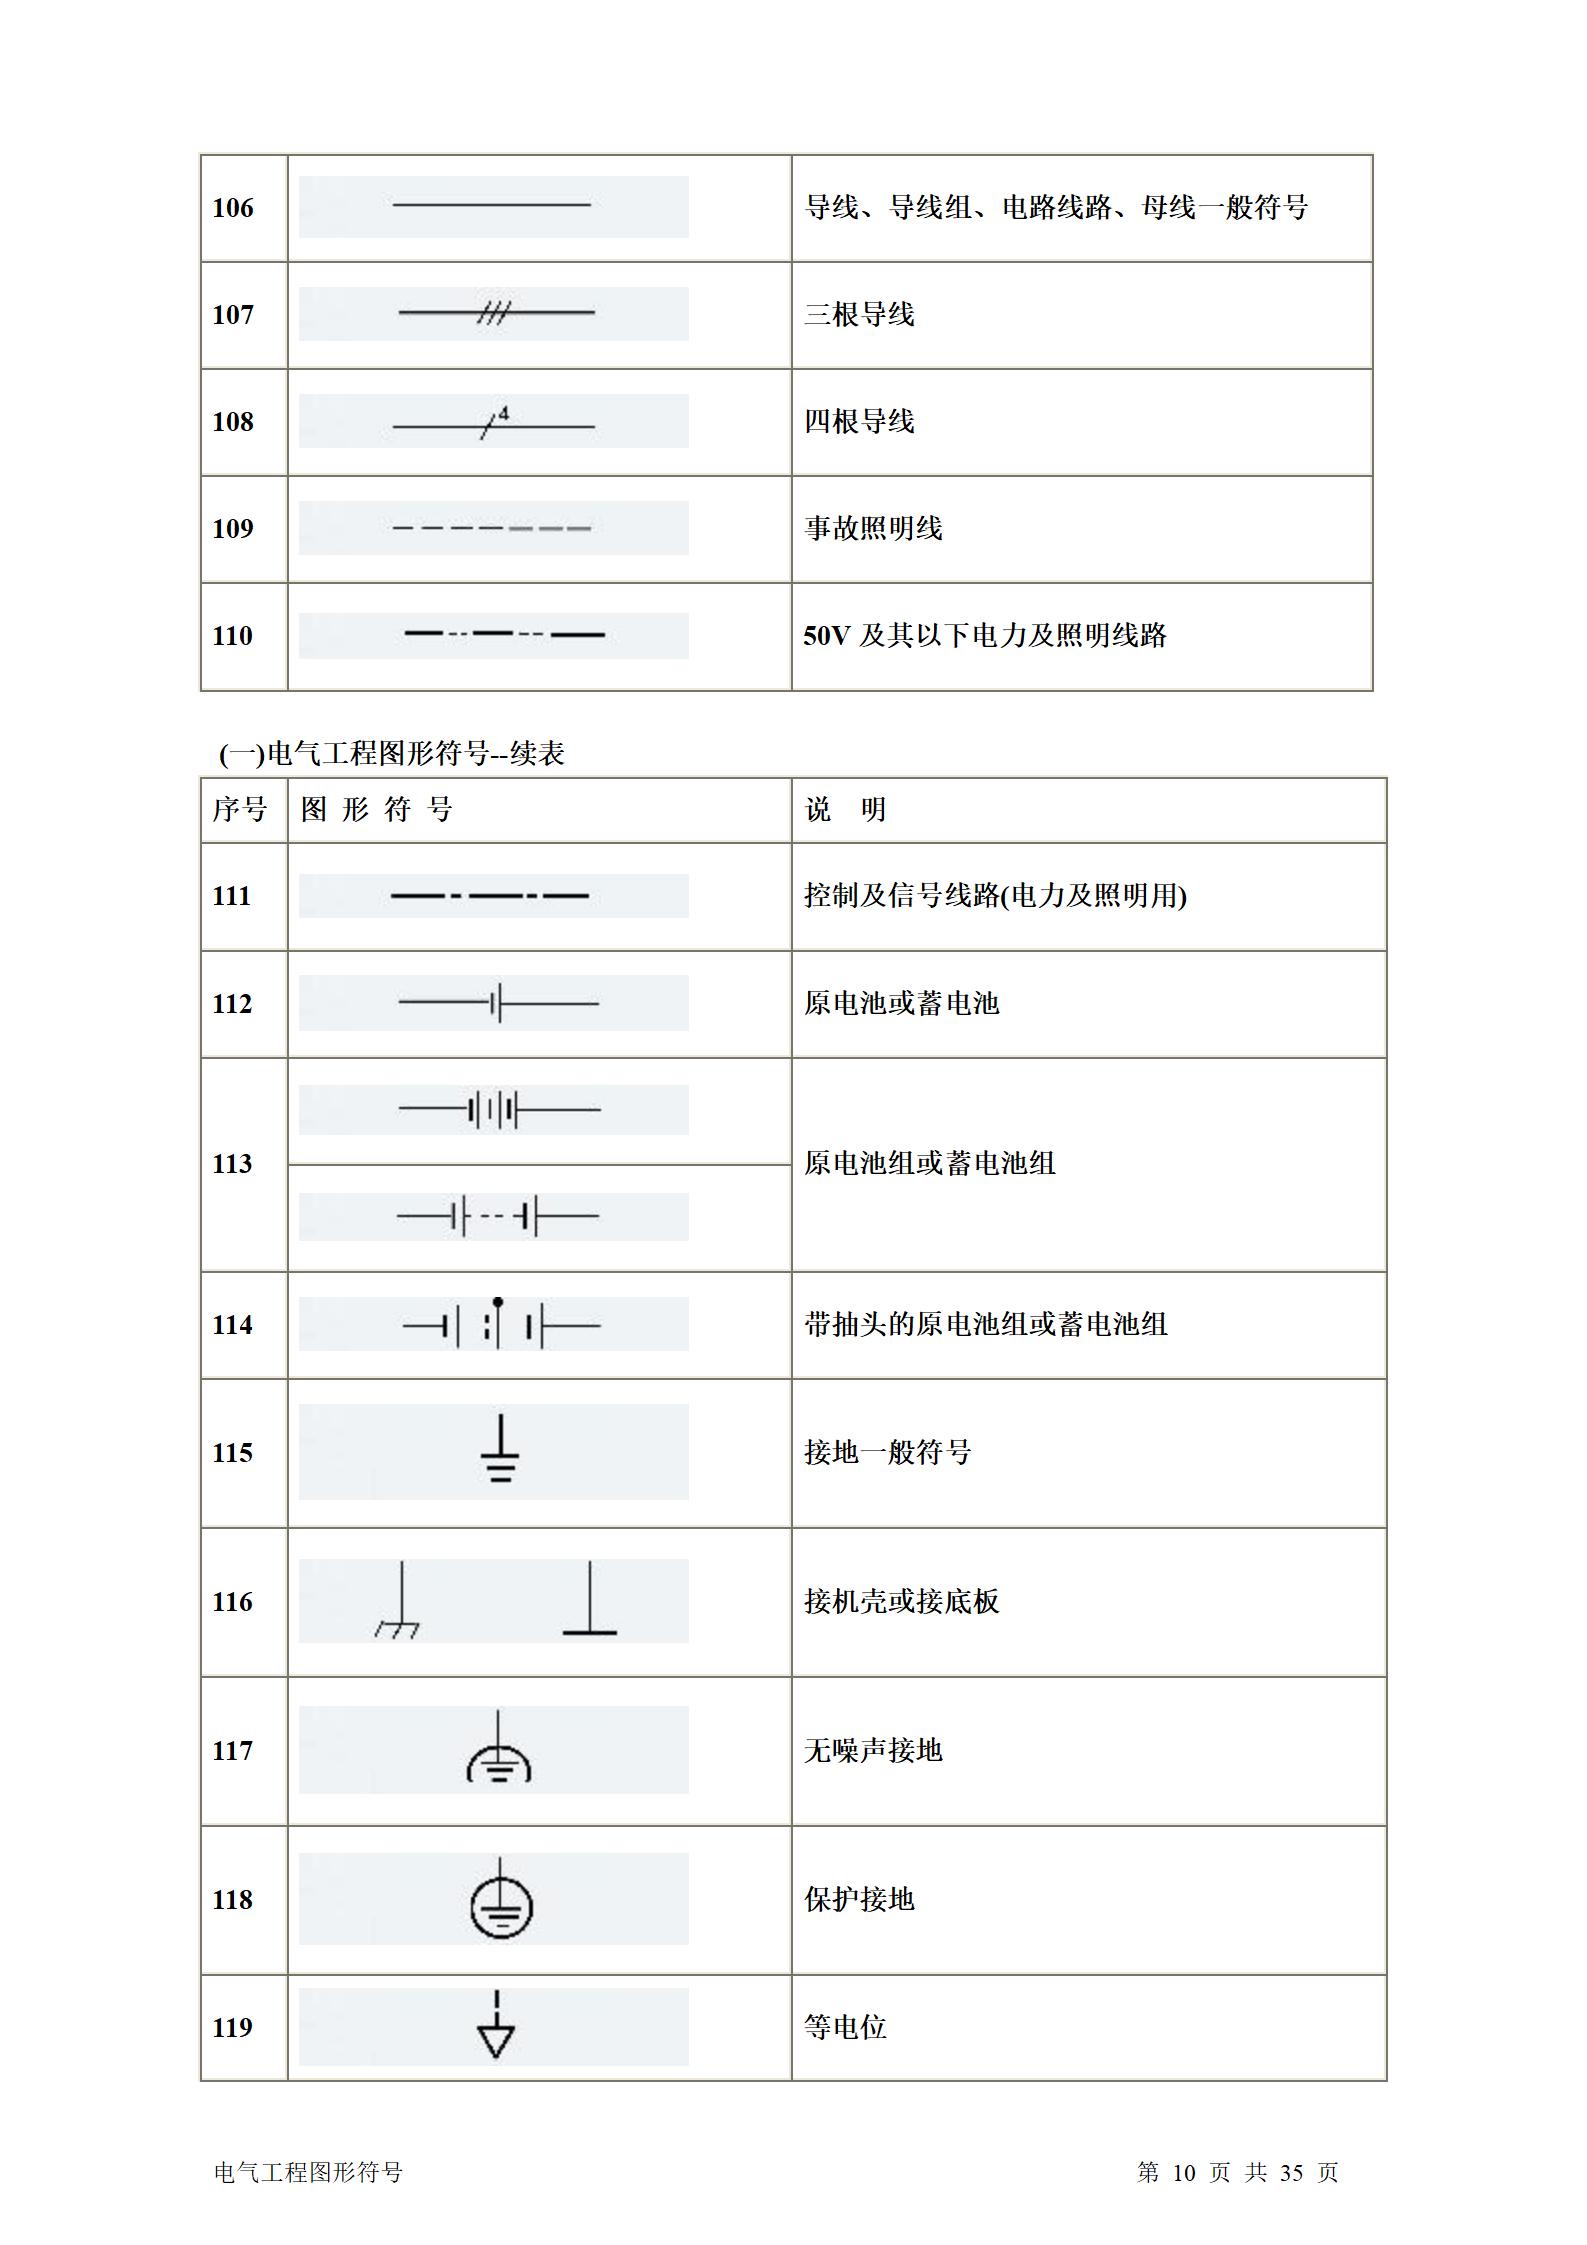 建筑电气、水暖、通风工程图形符号大全word版插图(10)